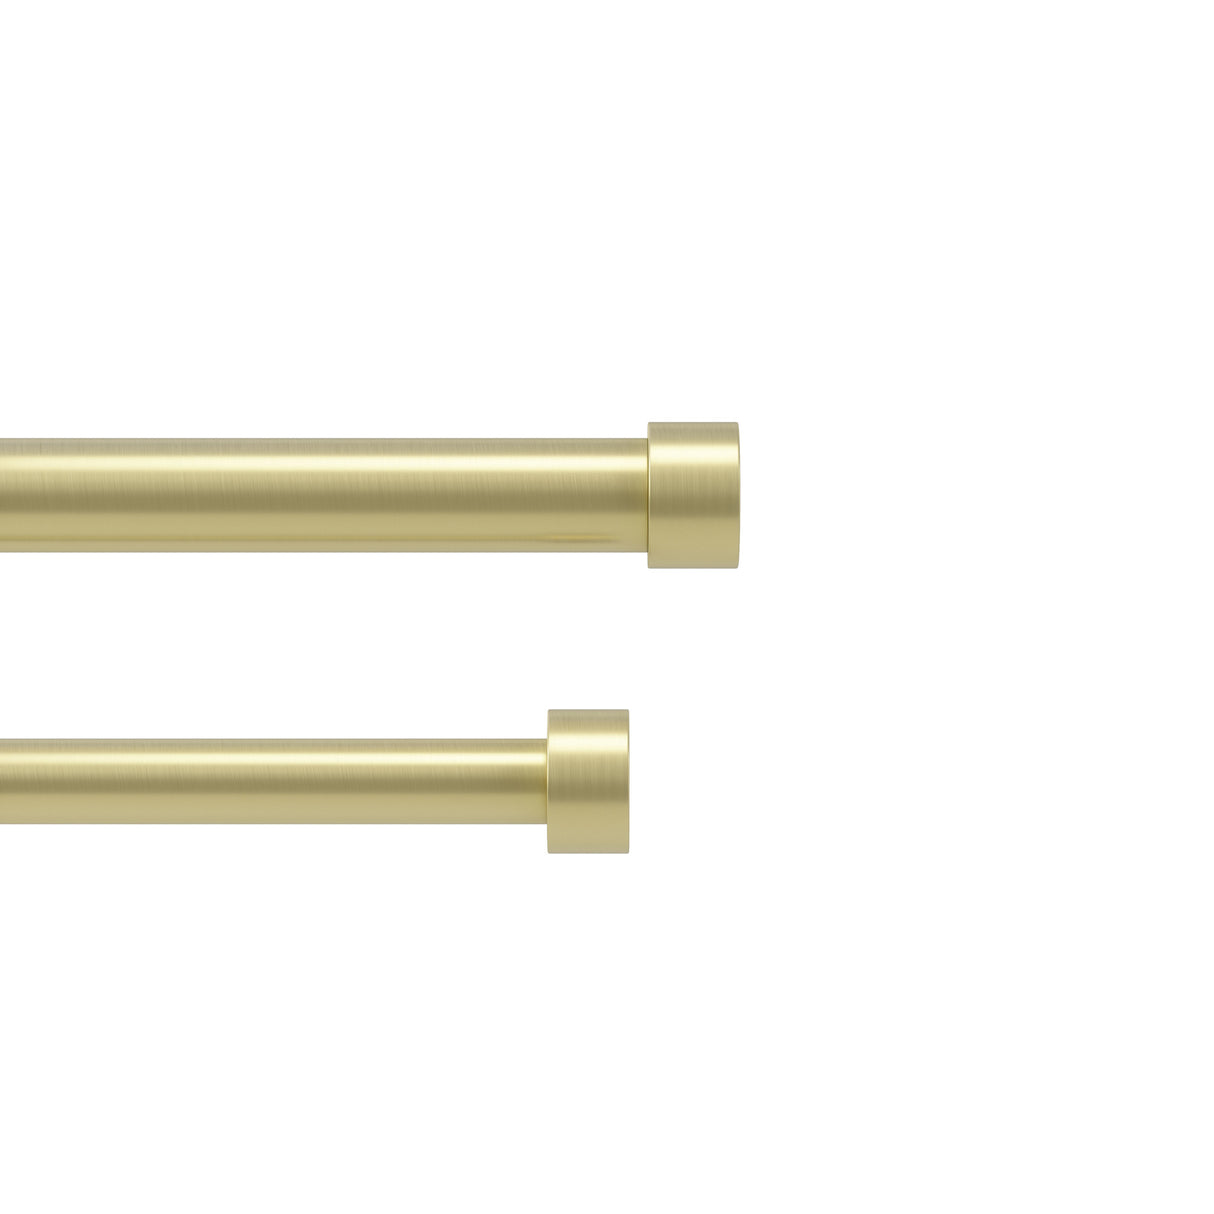 Double Curtain Rods | color: Brass | size: 36-66" (91-168 cm) | diameter: 1" (2.5 cm)